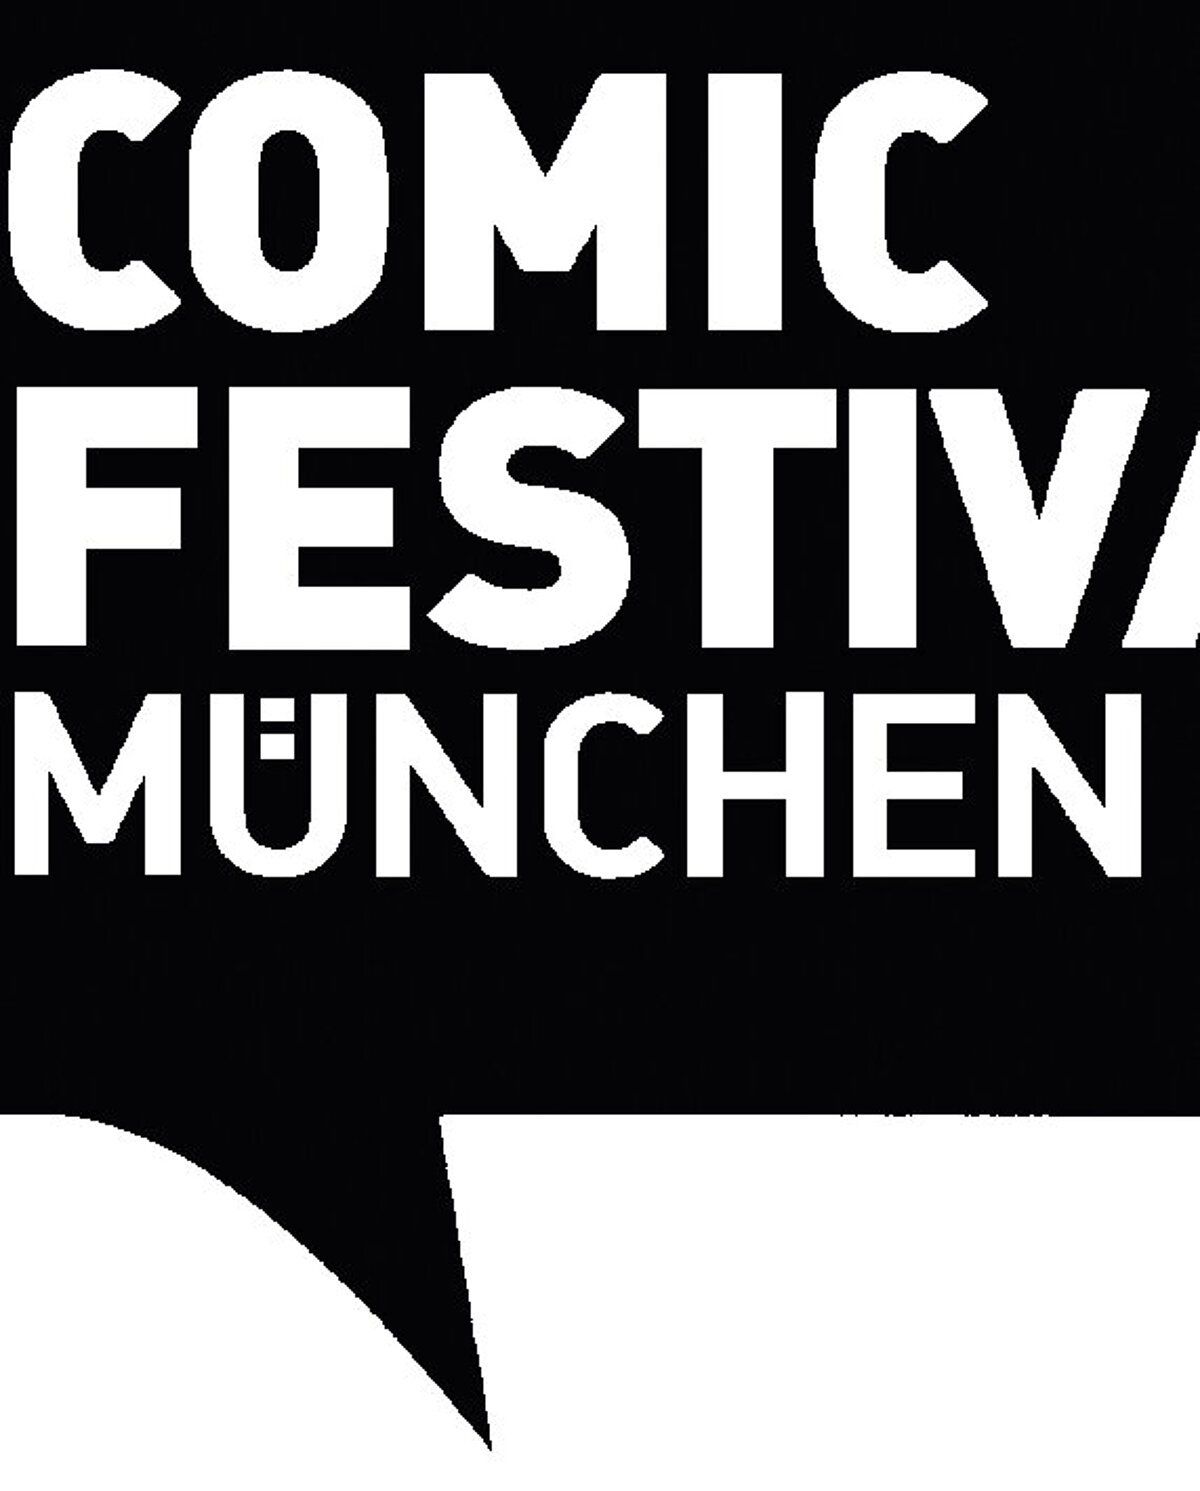 Comic Festival München